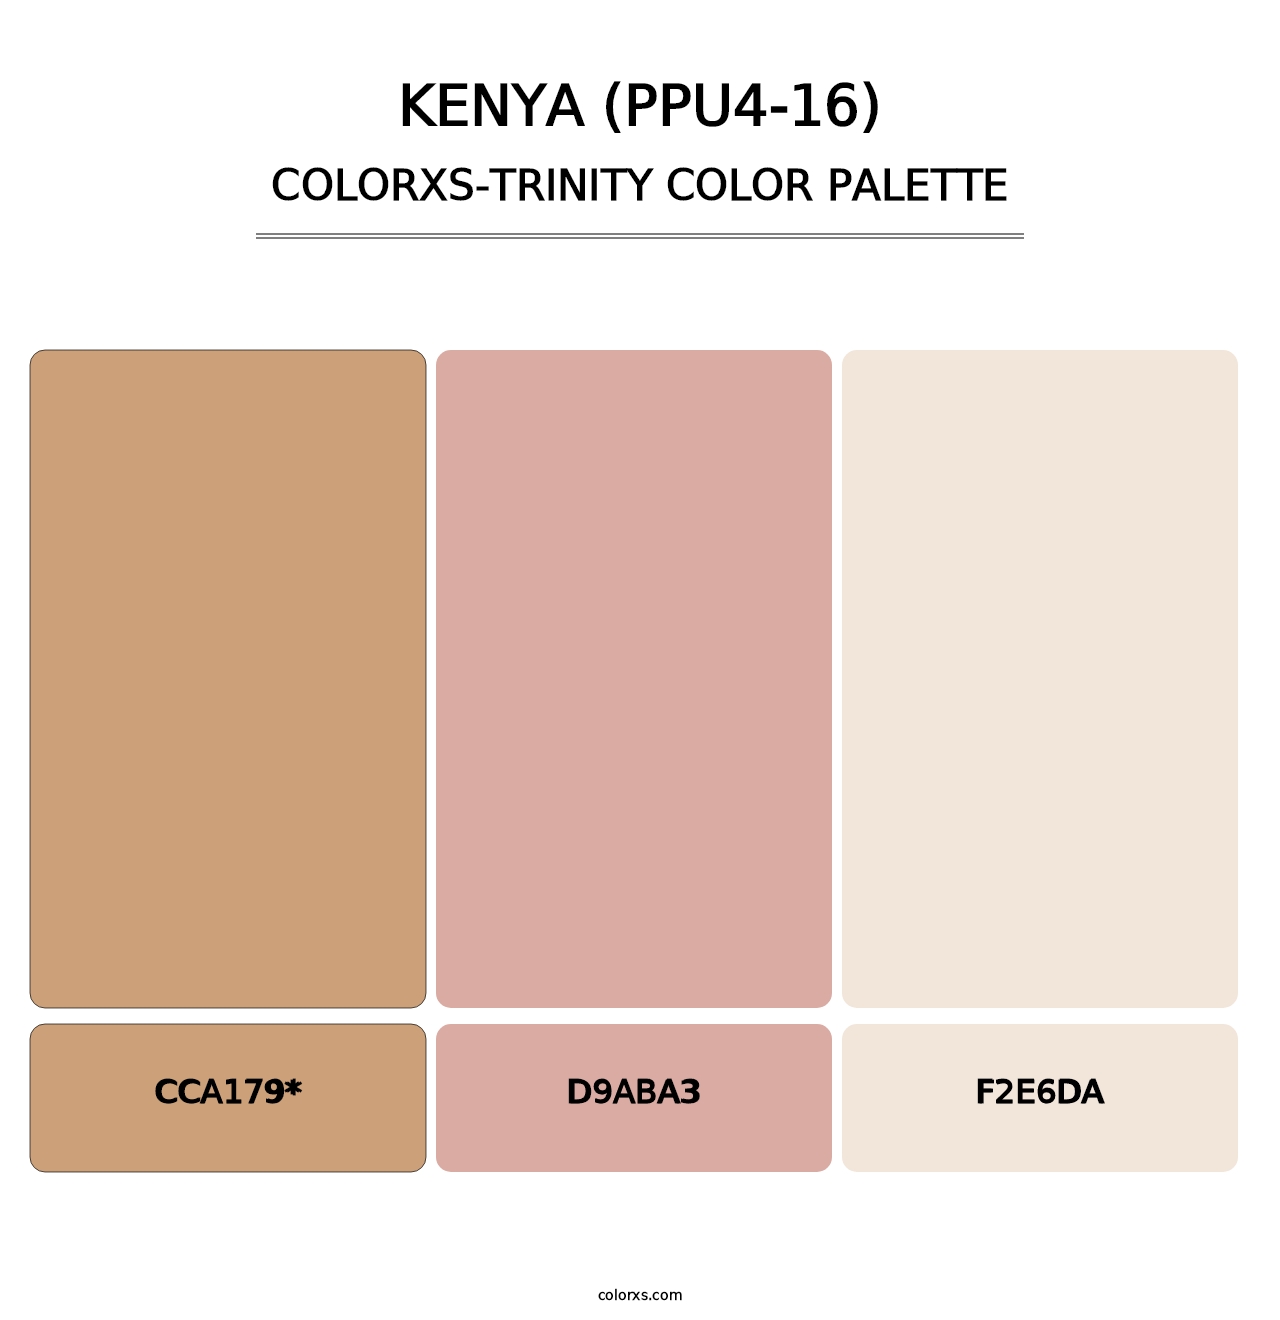 Kenya (PPU4-16) - Colorxs Trinity Palette